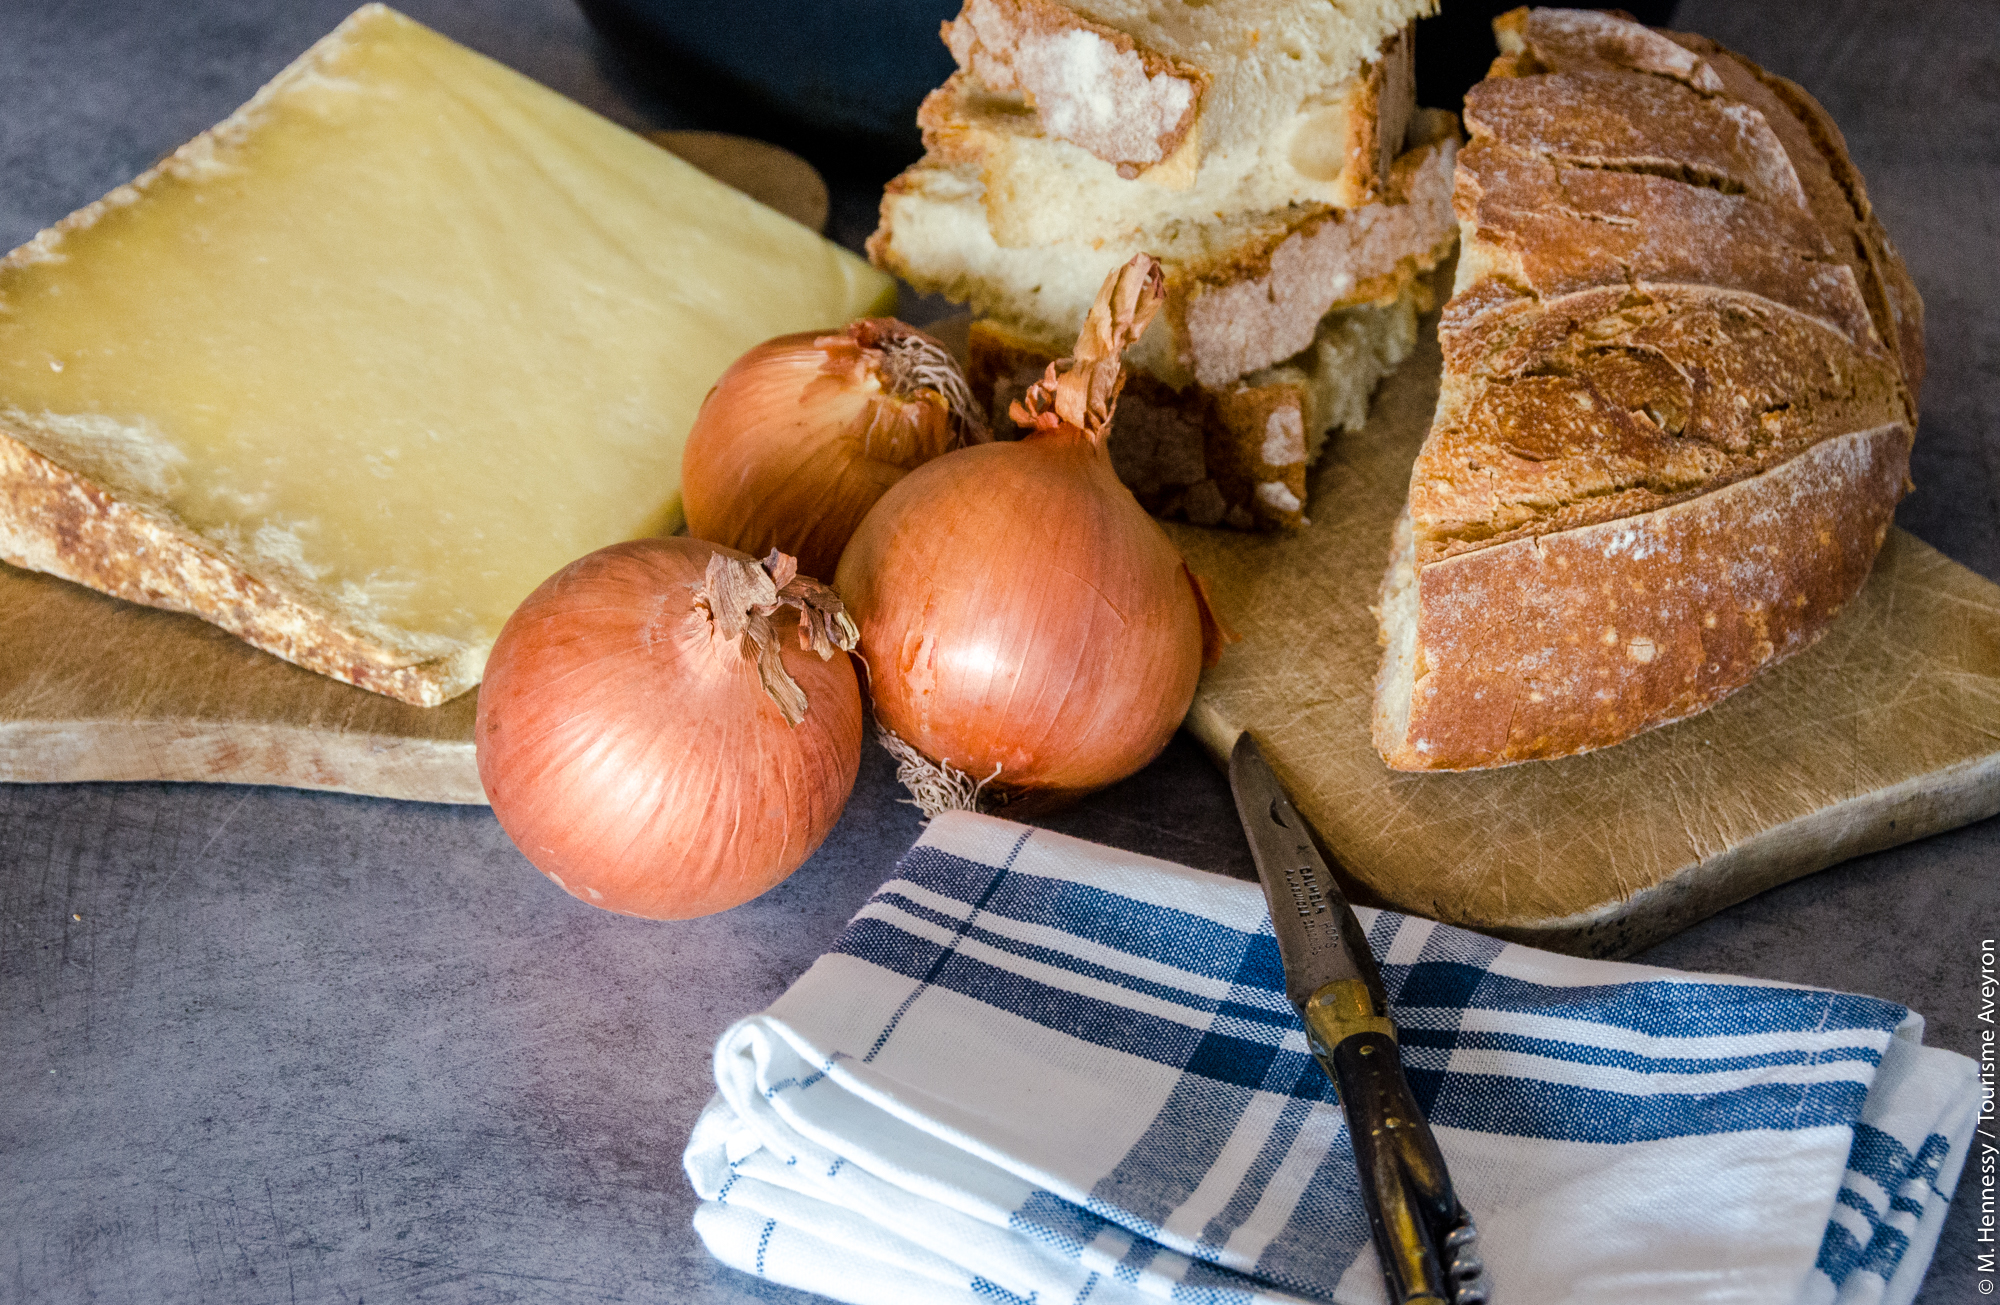 Ingrédients pour la soupe au fromage de l'Aveyron